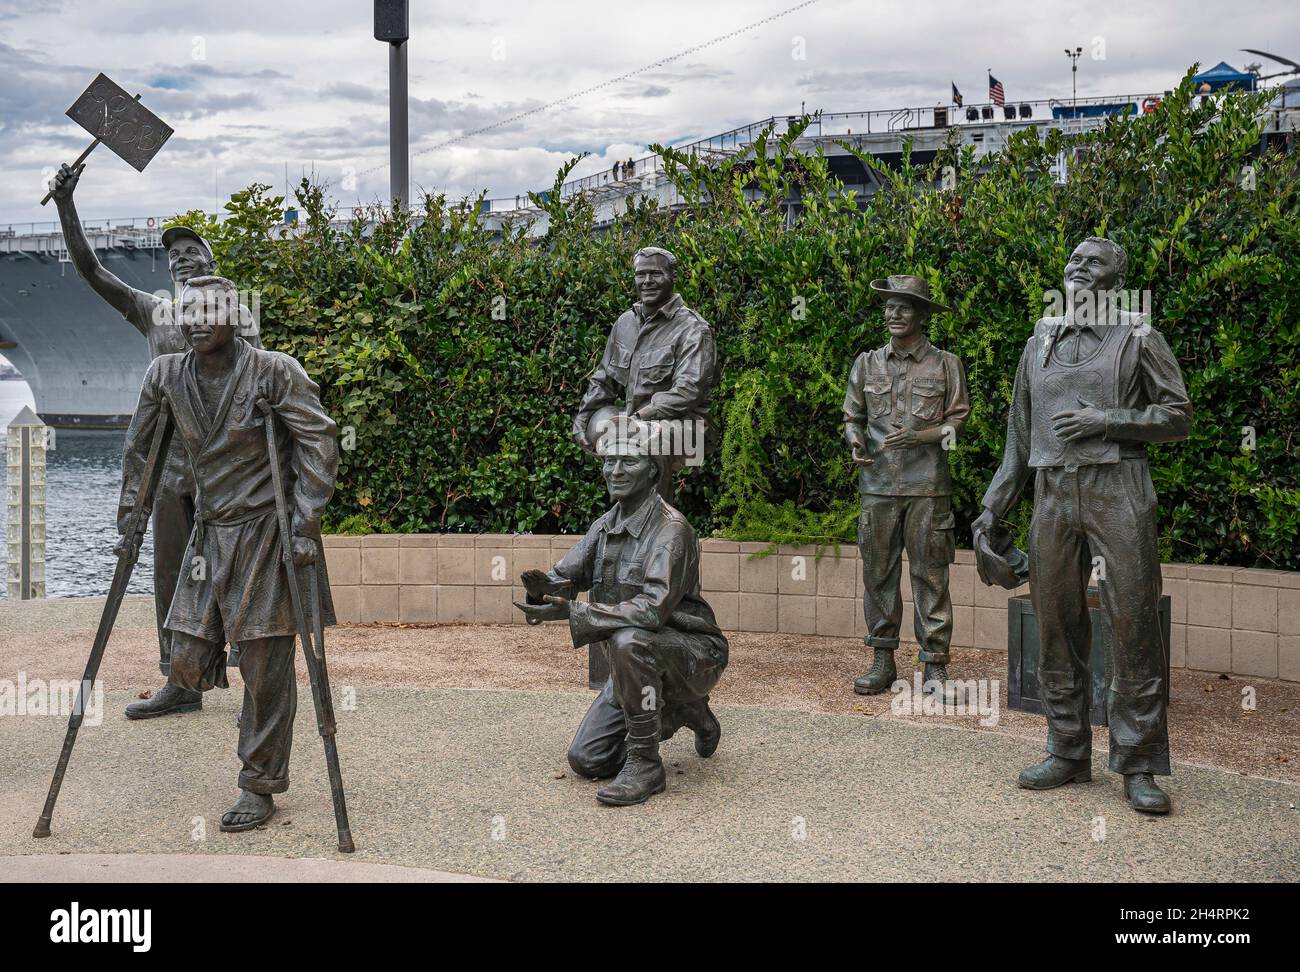 San Diego, Kalifornien, USA - 4. Oktober 2021: Ein nationaler Gruß an Bob Hope und die Militärstatuengruppe 6 Männer, 1 auf Krücken, 1 mit Brett. In der Mitte Stockfoto